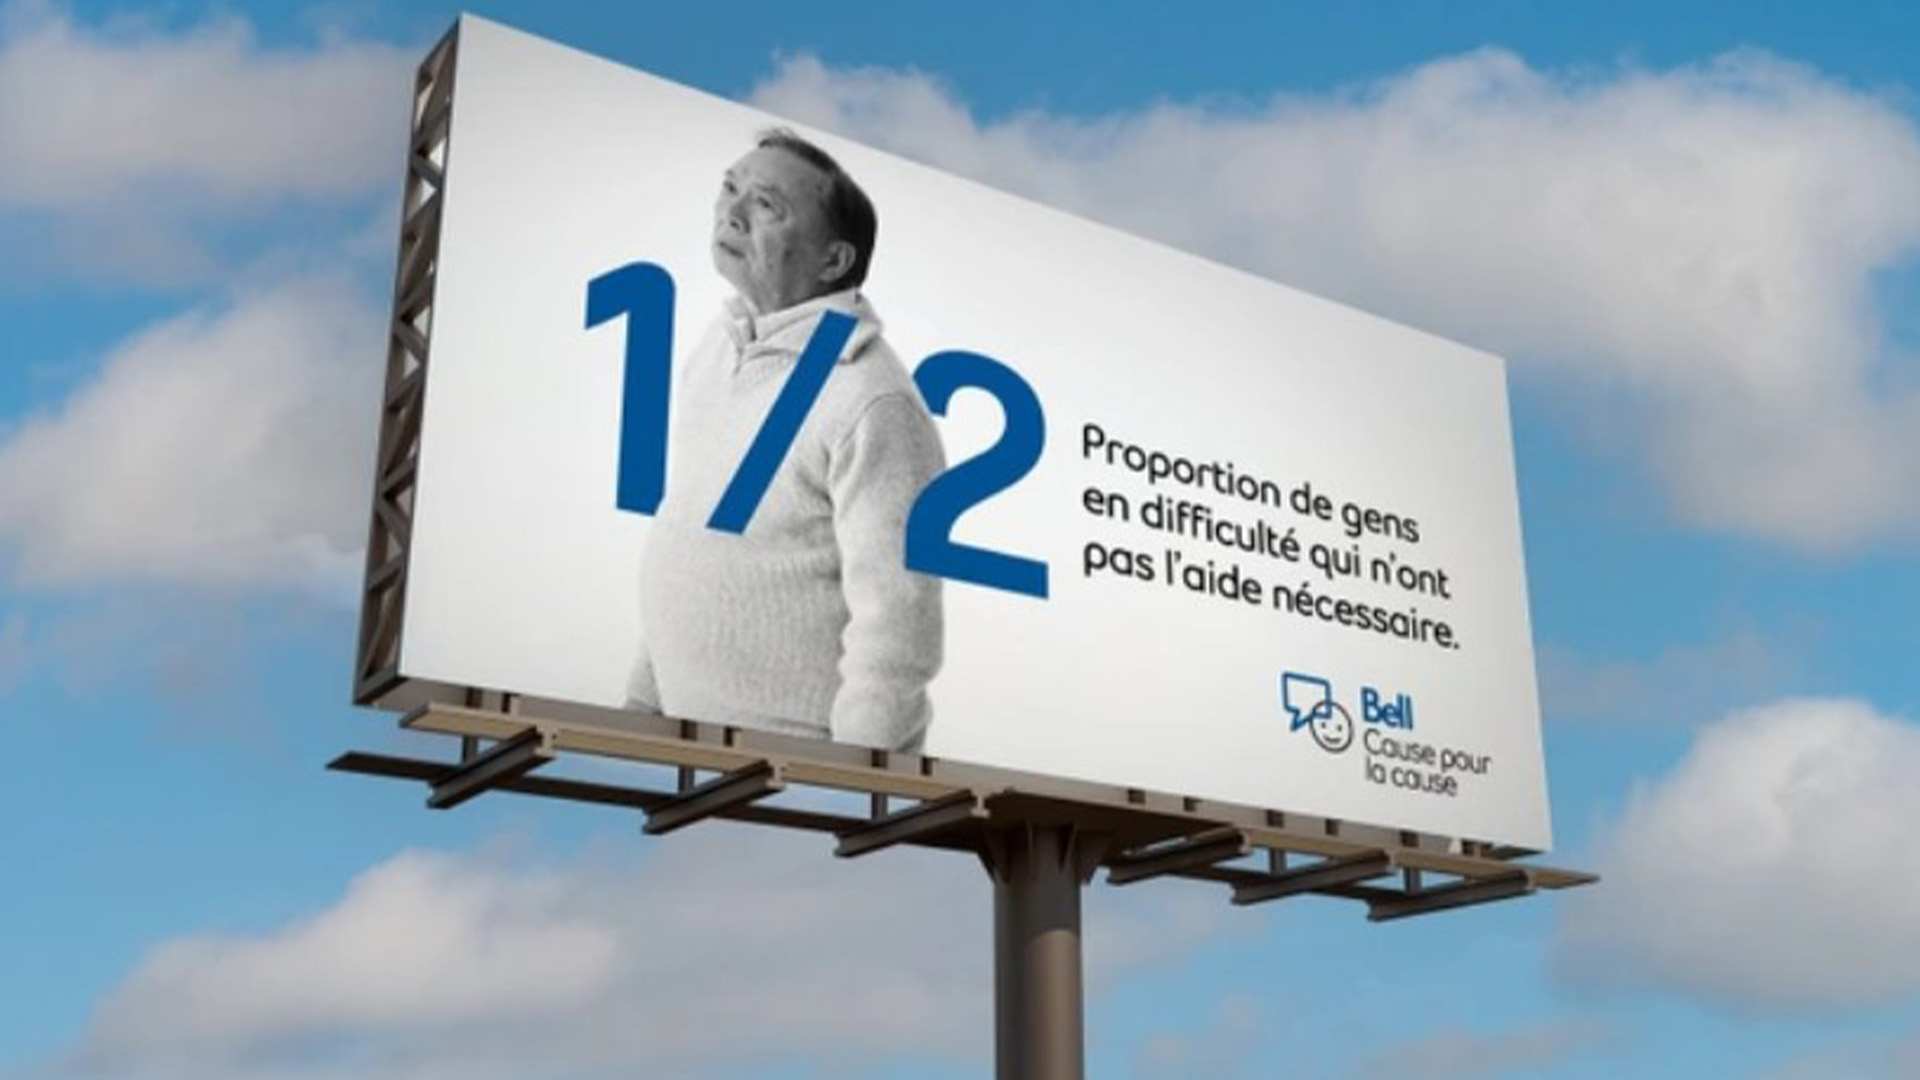 L’initiative Bell Cause pour la cause coïncide avec la Journée nationale de la santé mentale au Canada - le 25 janvier 2023.